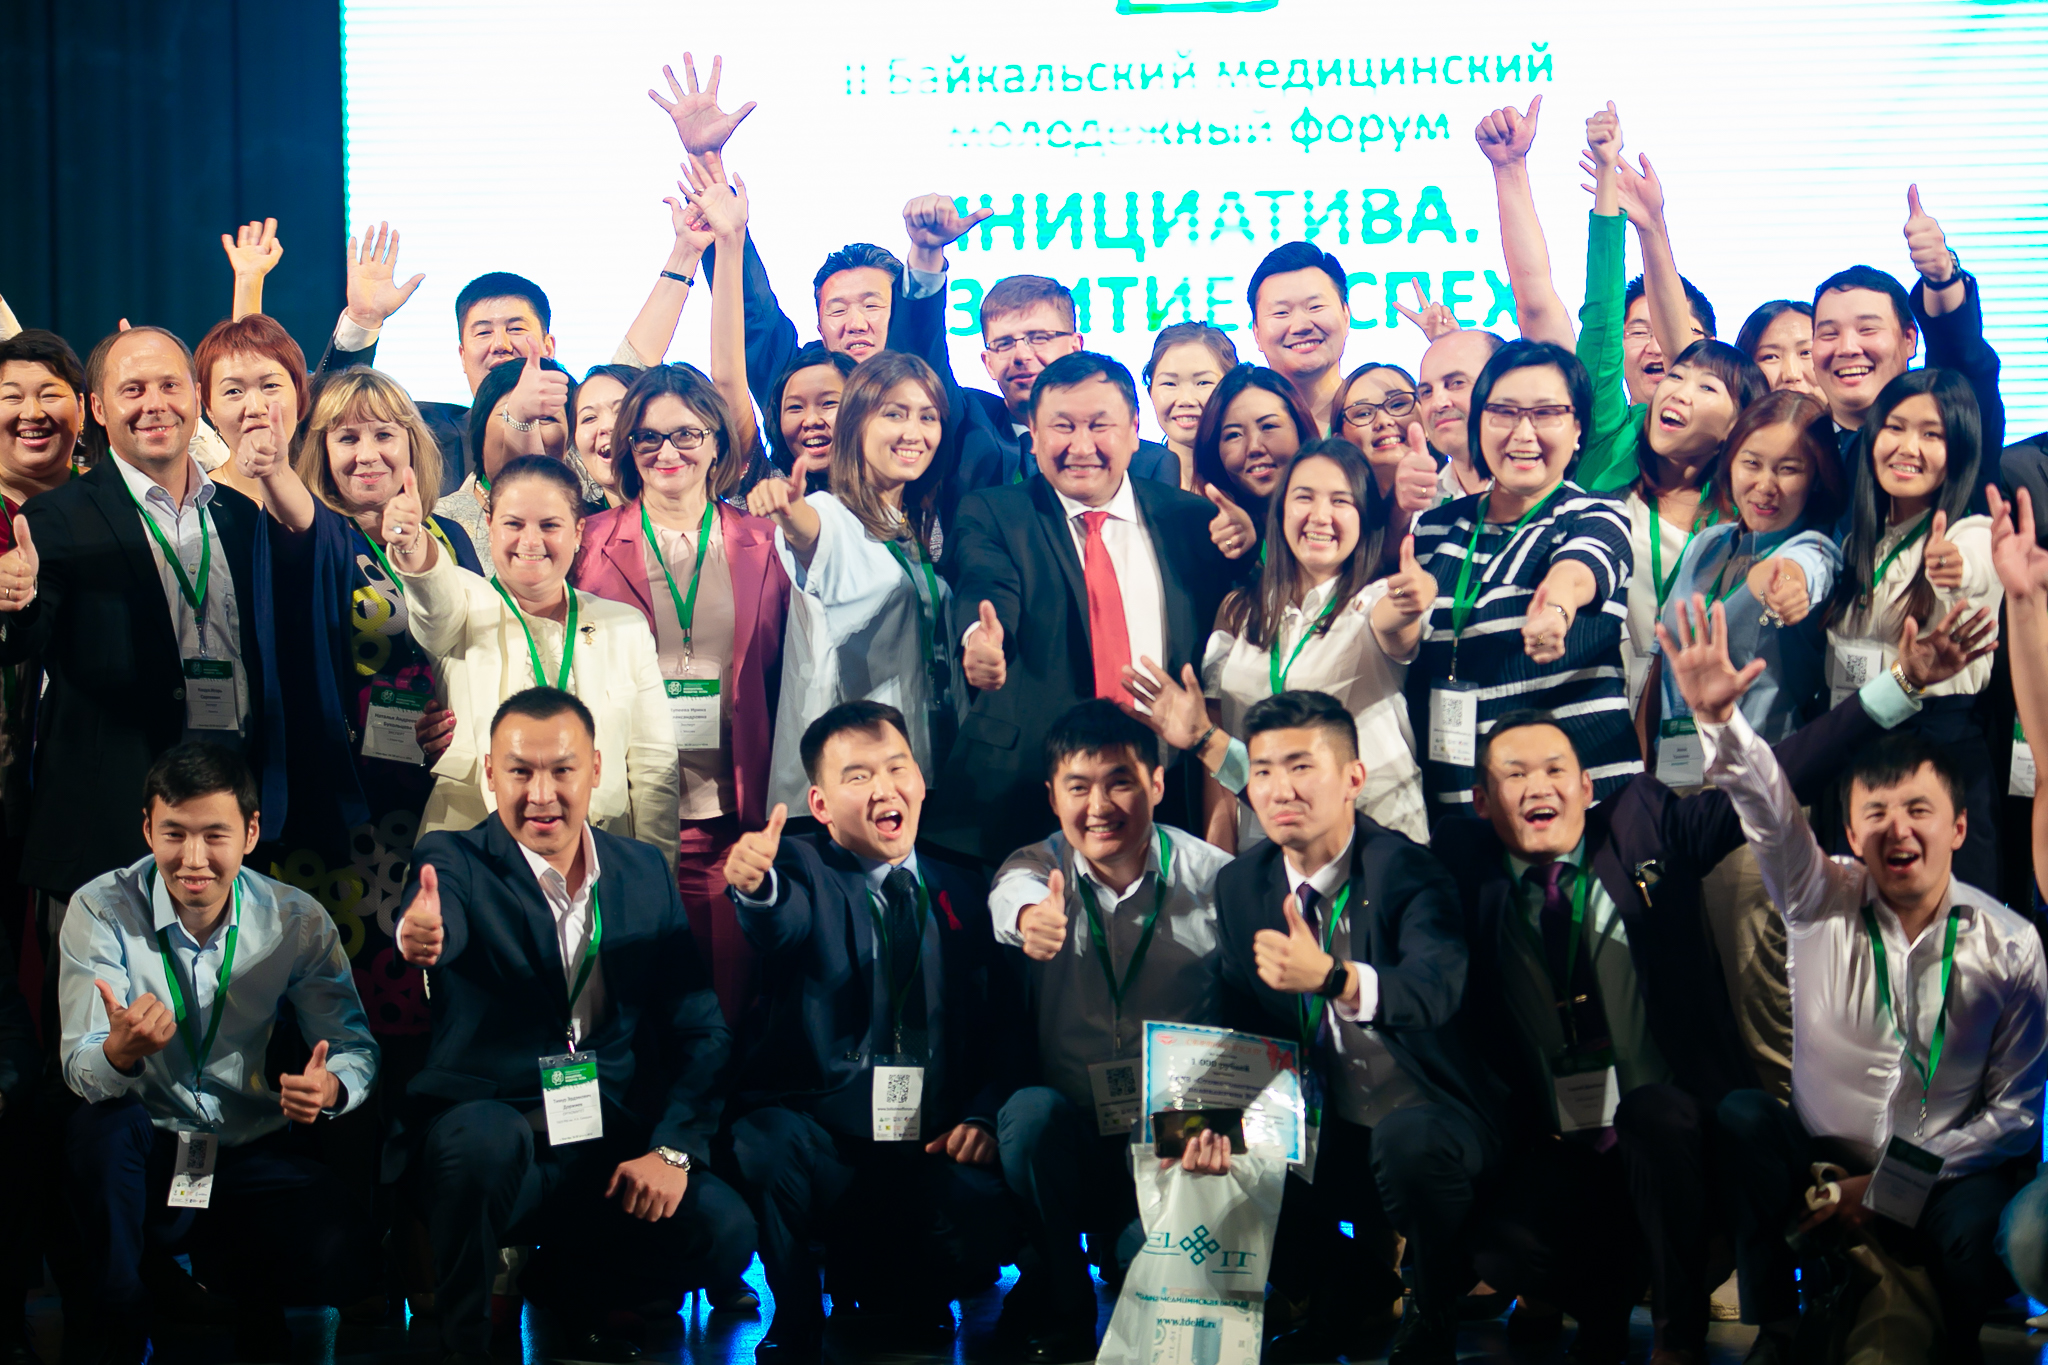 Команда "Байкальского медицинского молодежного форума" стала лучшей социально-ориентированной некоммерческой организацией Бурятии 